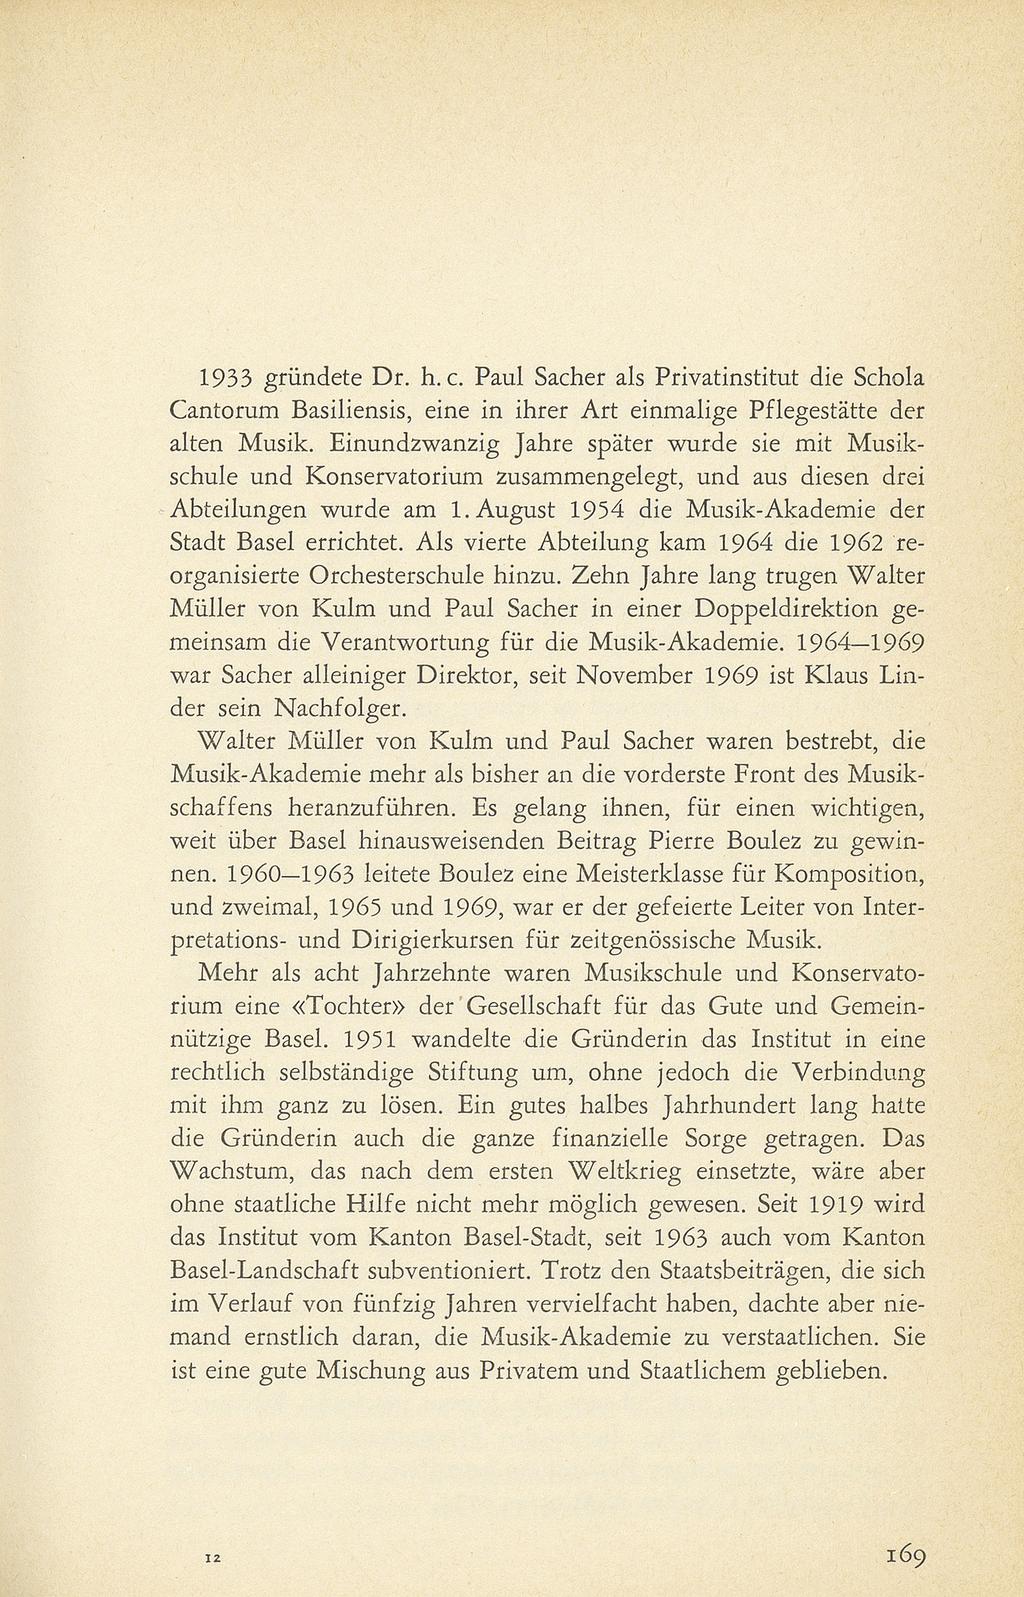 1933 gründete Dr. h. c. Paul Sacher als Privatinstitut die Schola Cantorum Basiliensis, eine in ihrer Art einmalige Pflegestätte der alten Musik.